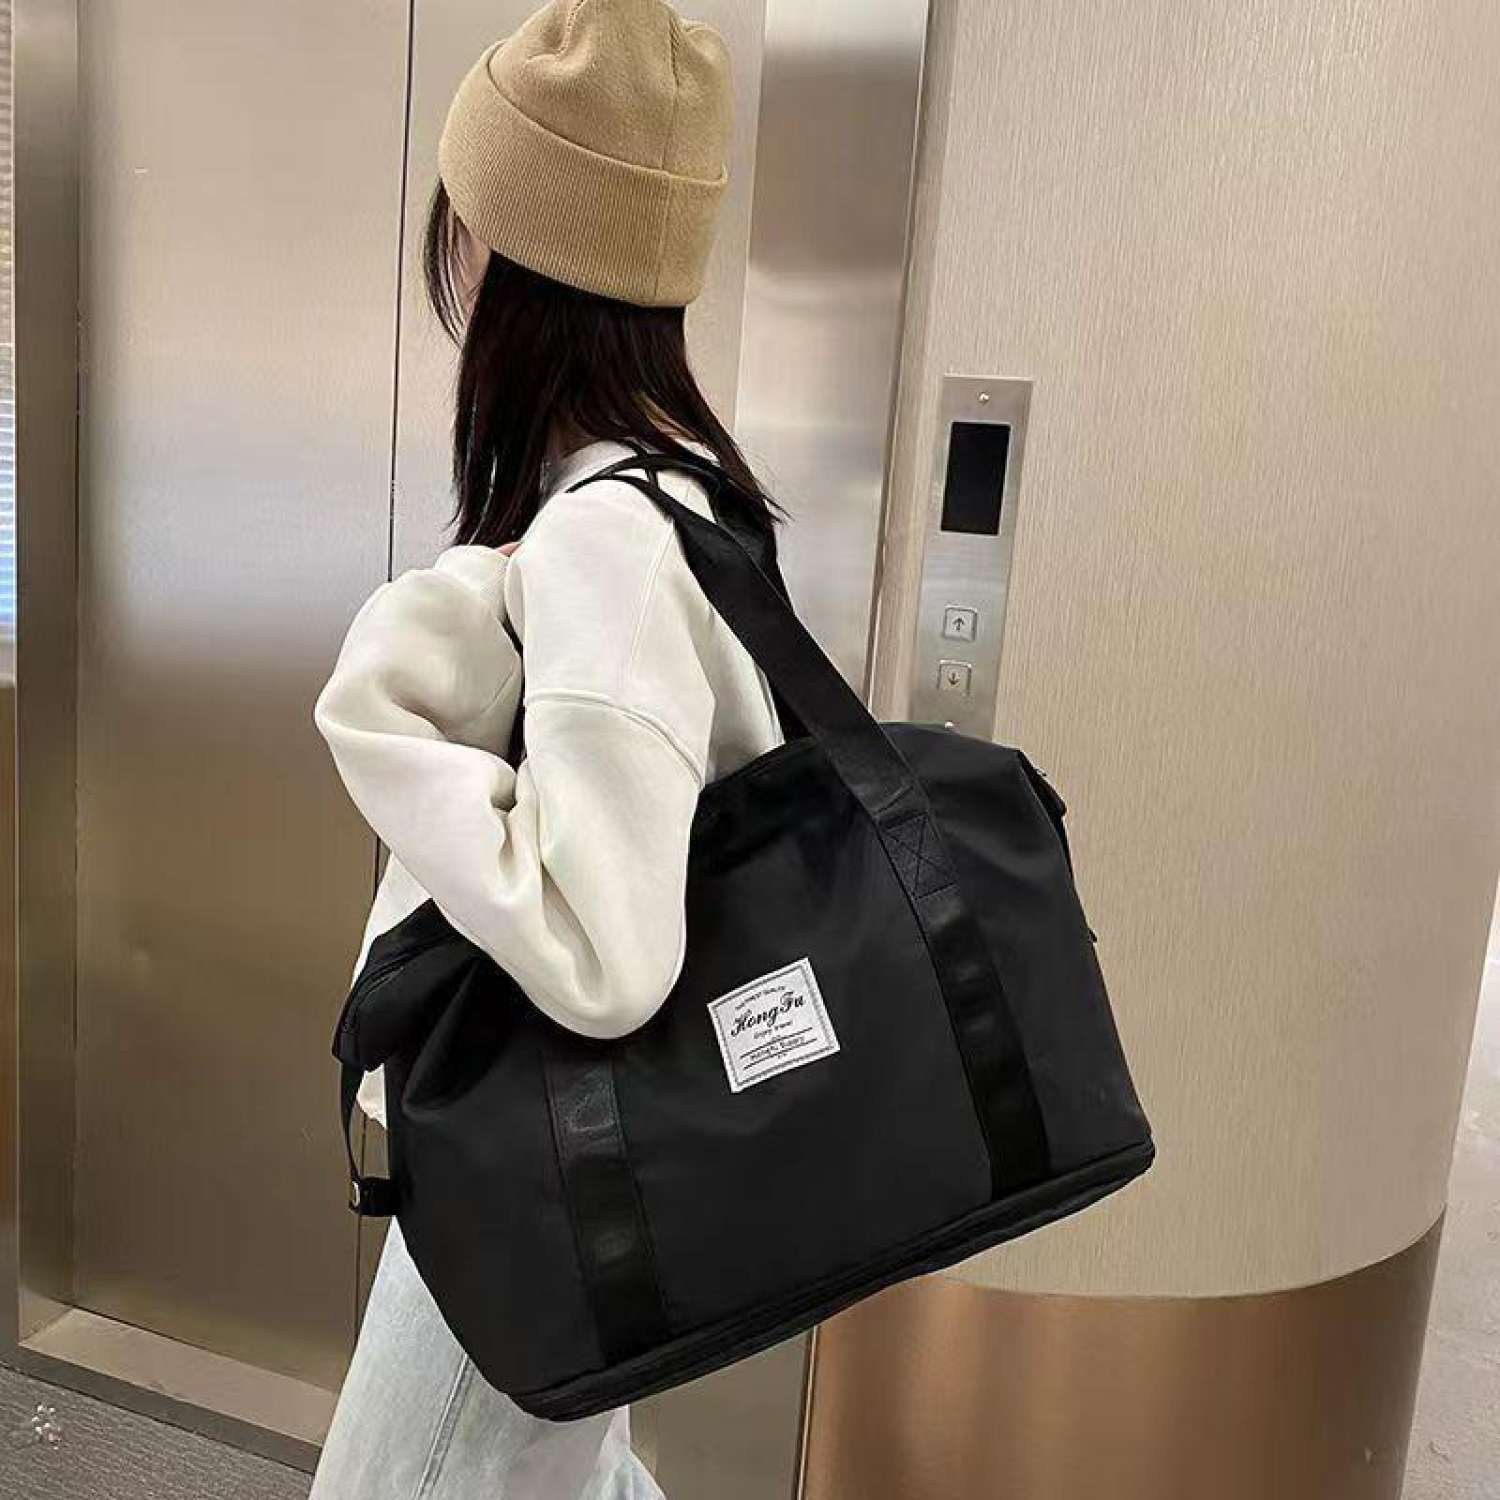 Túi xách du lịch 2 tầng có nhiều ngăn đựng chất liệu vải dù chống thấm nước có thể thu gọn như túi 1 tầng